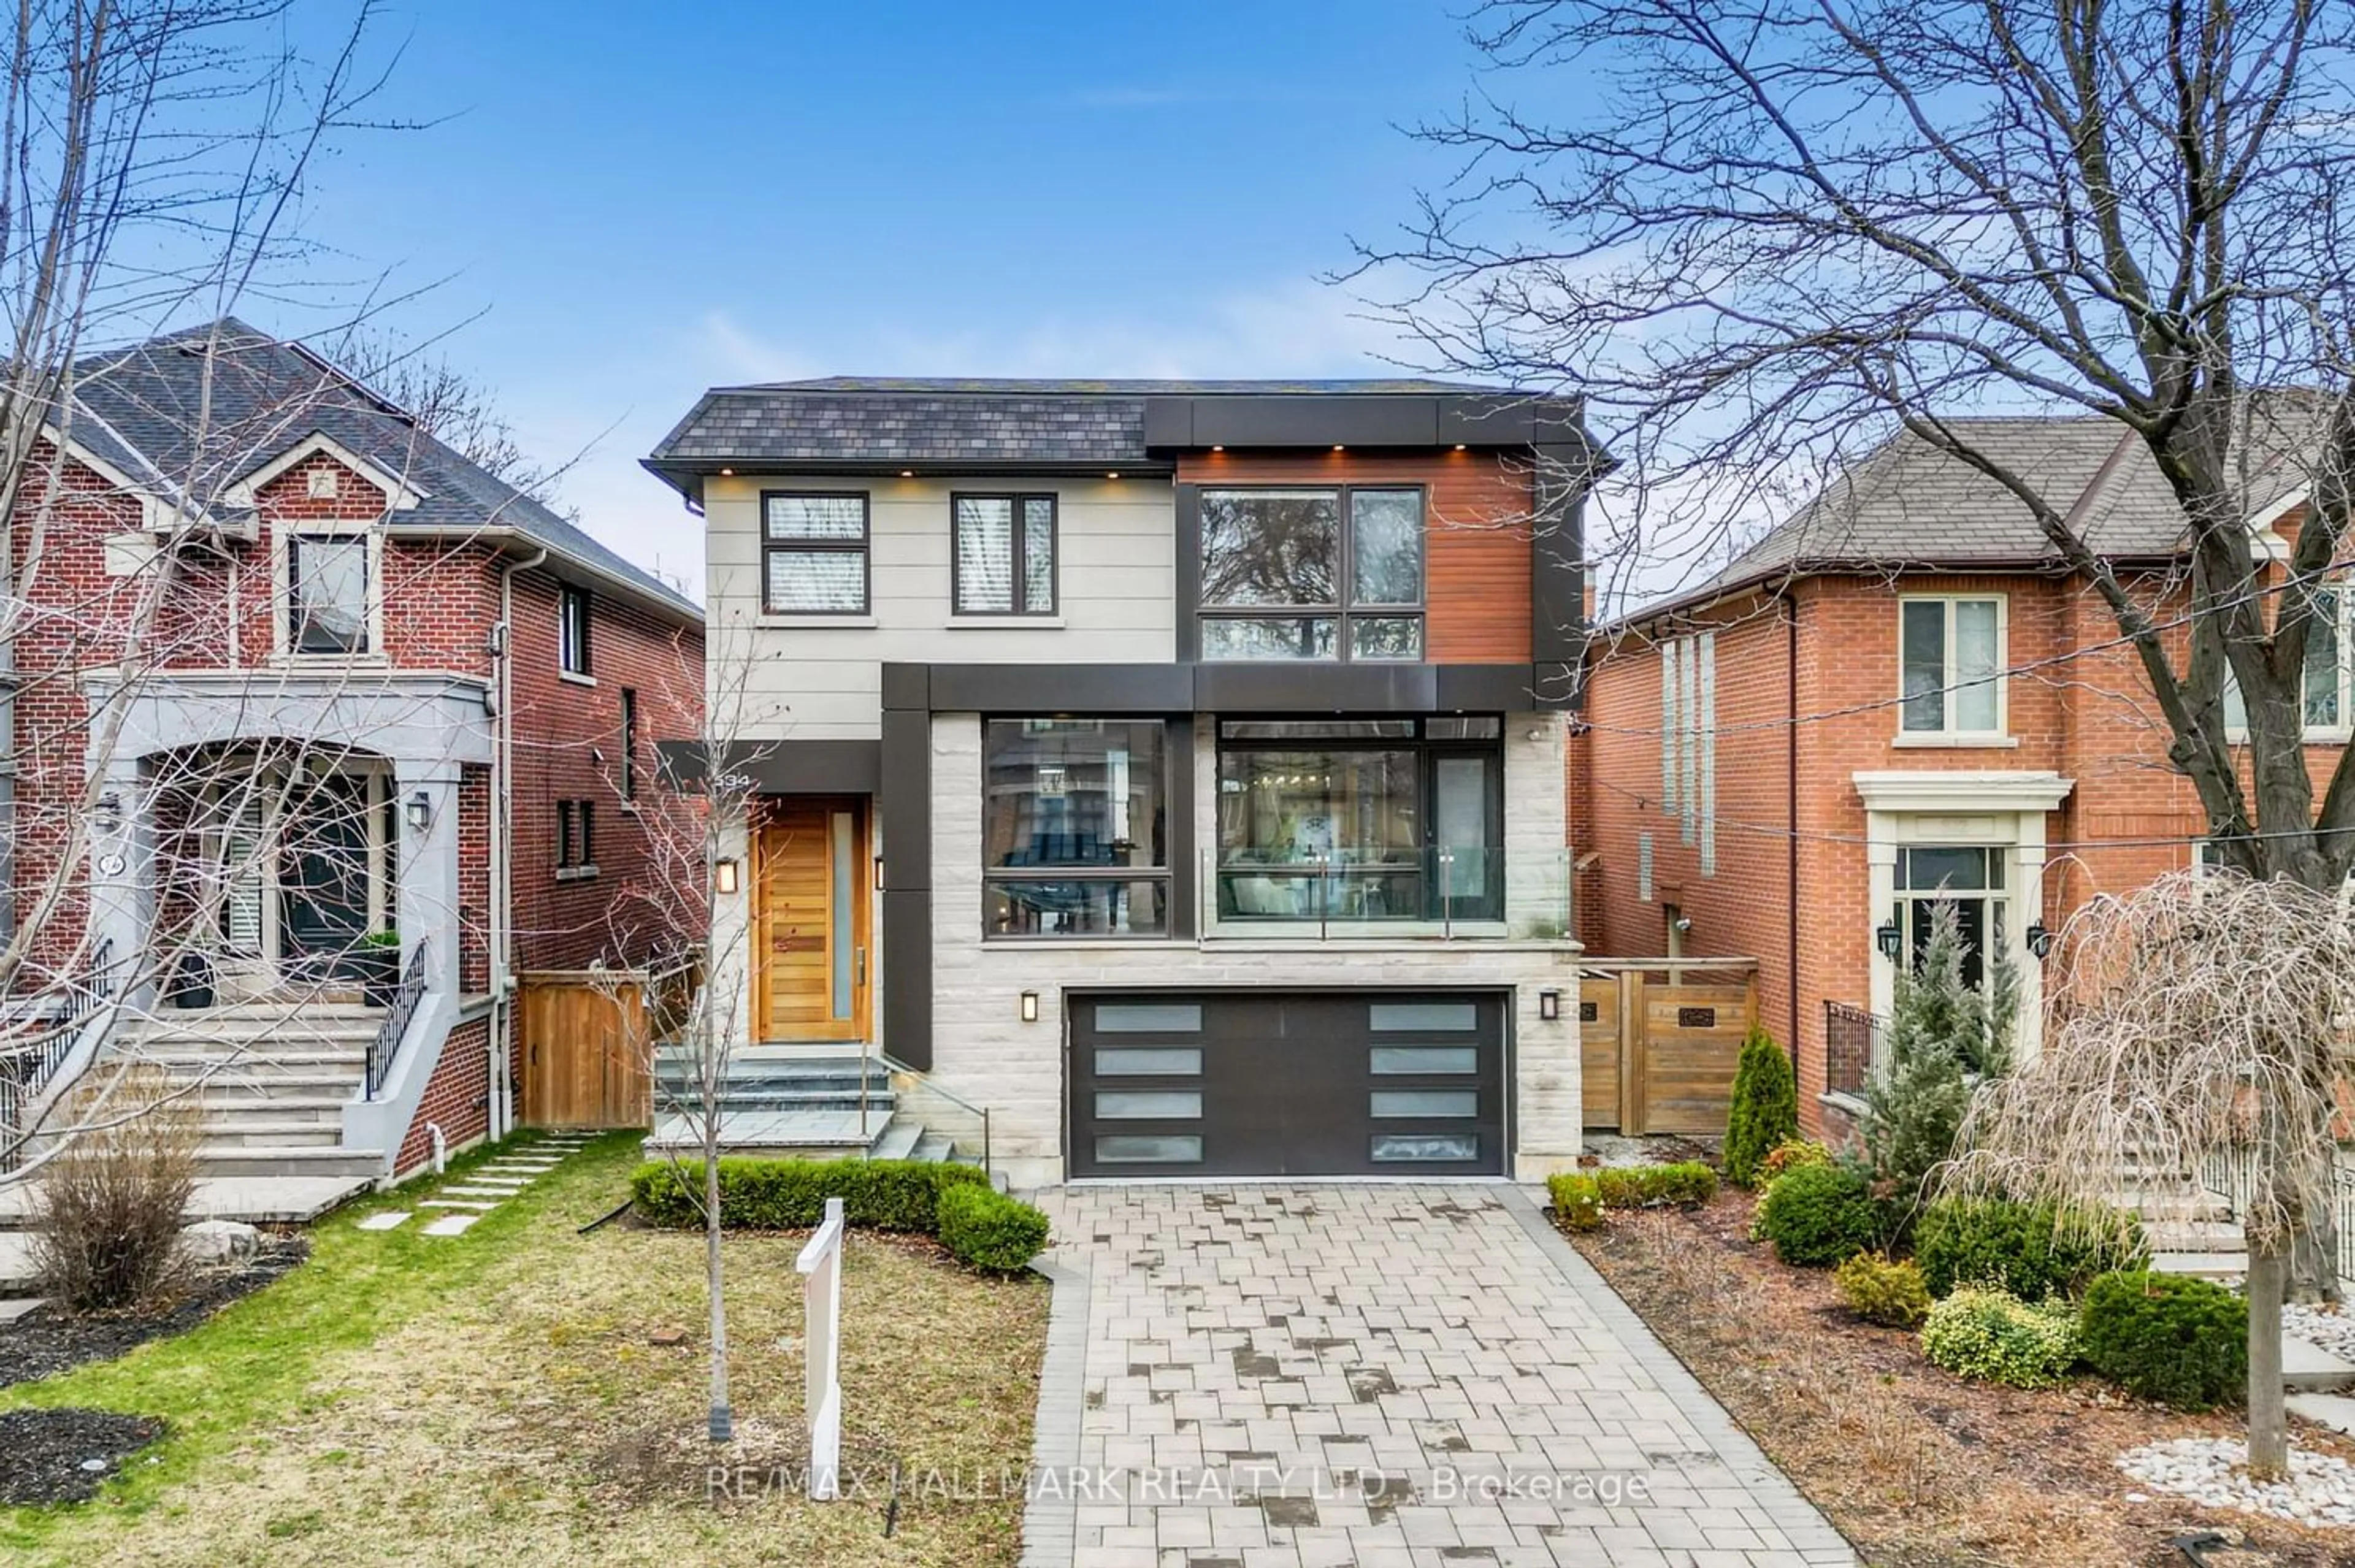 Home with brick exterior material for 534 Douglas Ave, Toronto Ontario M5M 1H5